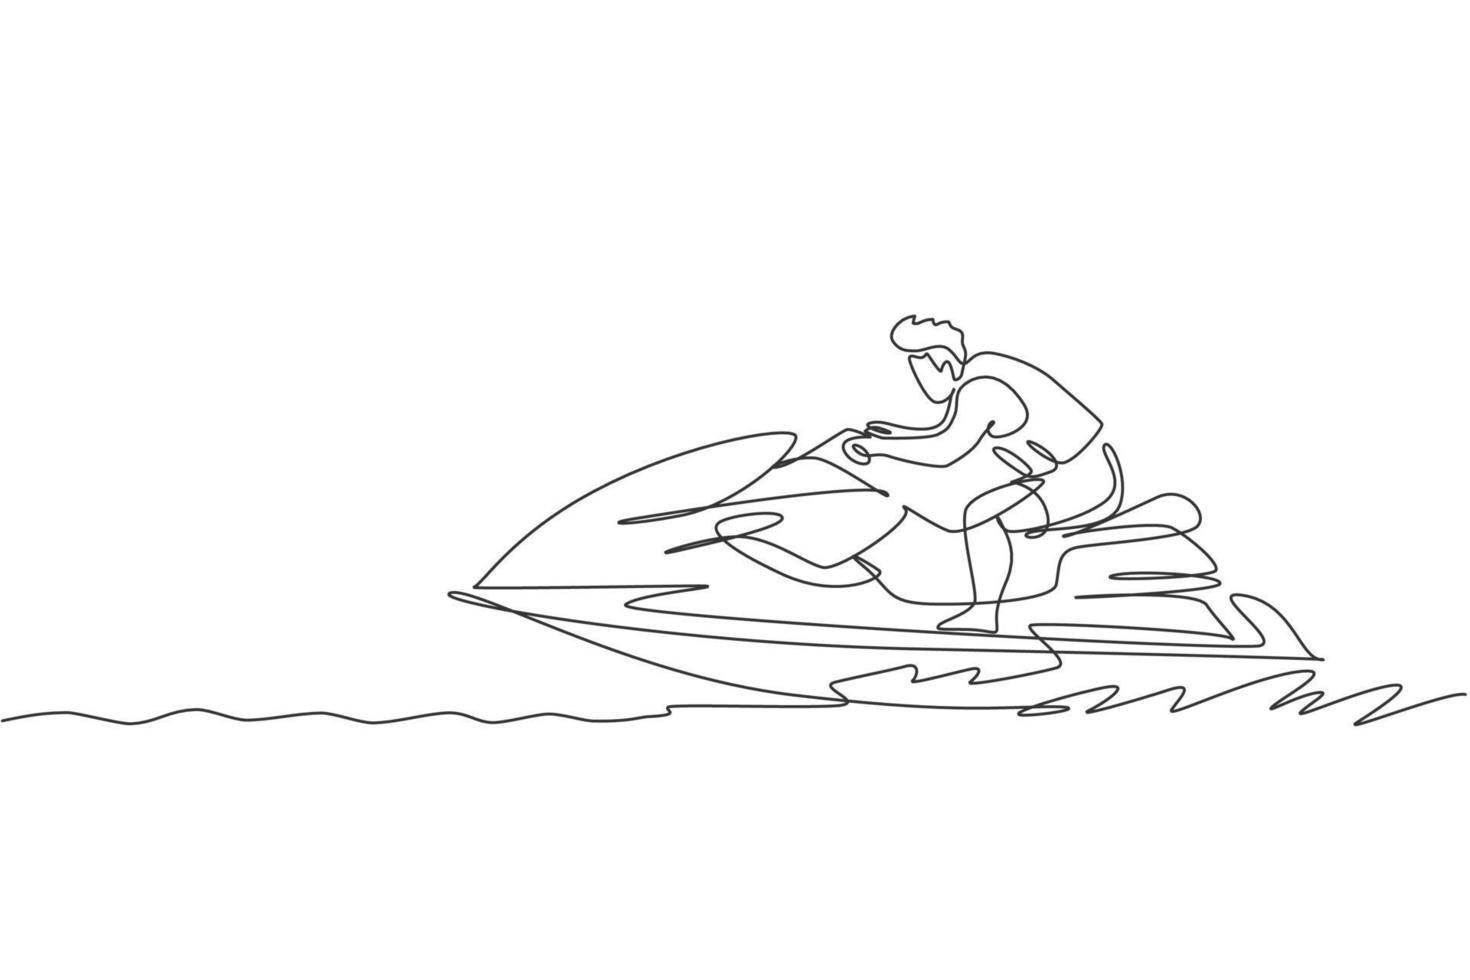 un dibujo de línea continua de un joven enérgico divertido jugar jet ski en el mar océano. concepto de deporte de estilo de vida saludable. felices vacaciones turísticas. Ilustración de vector de diseño de dibujo de línea única dinámica